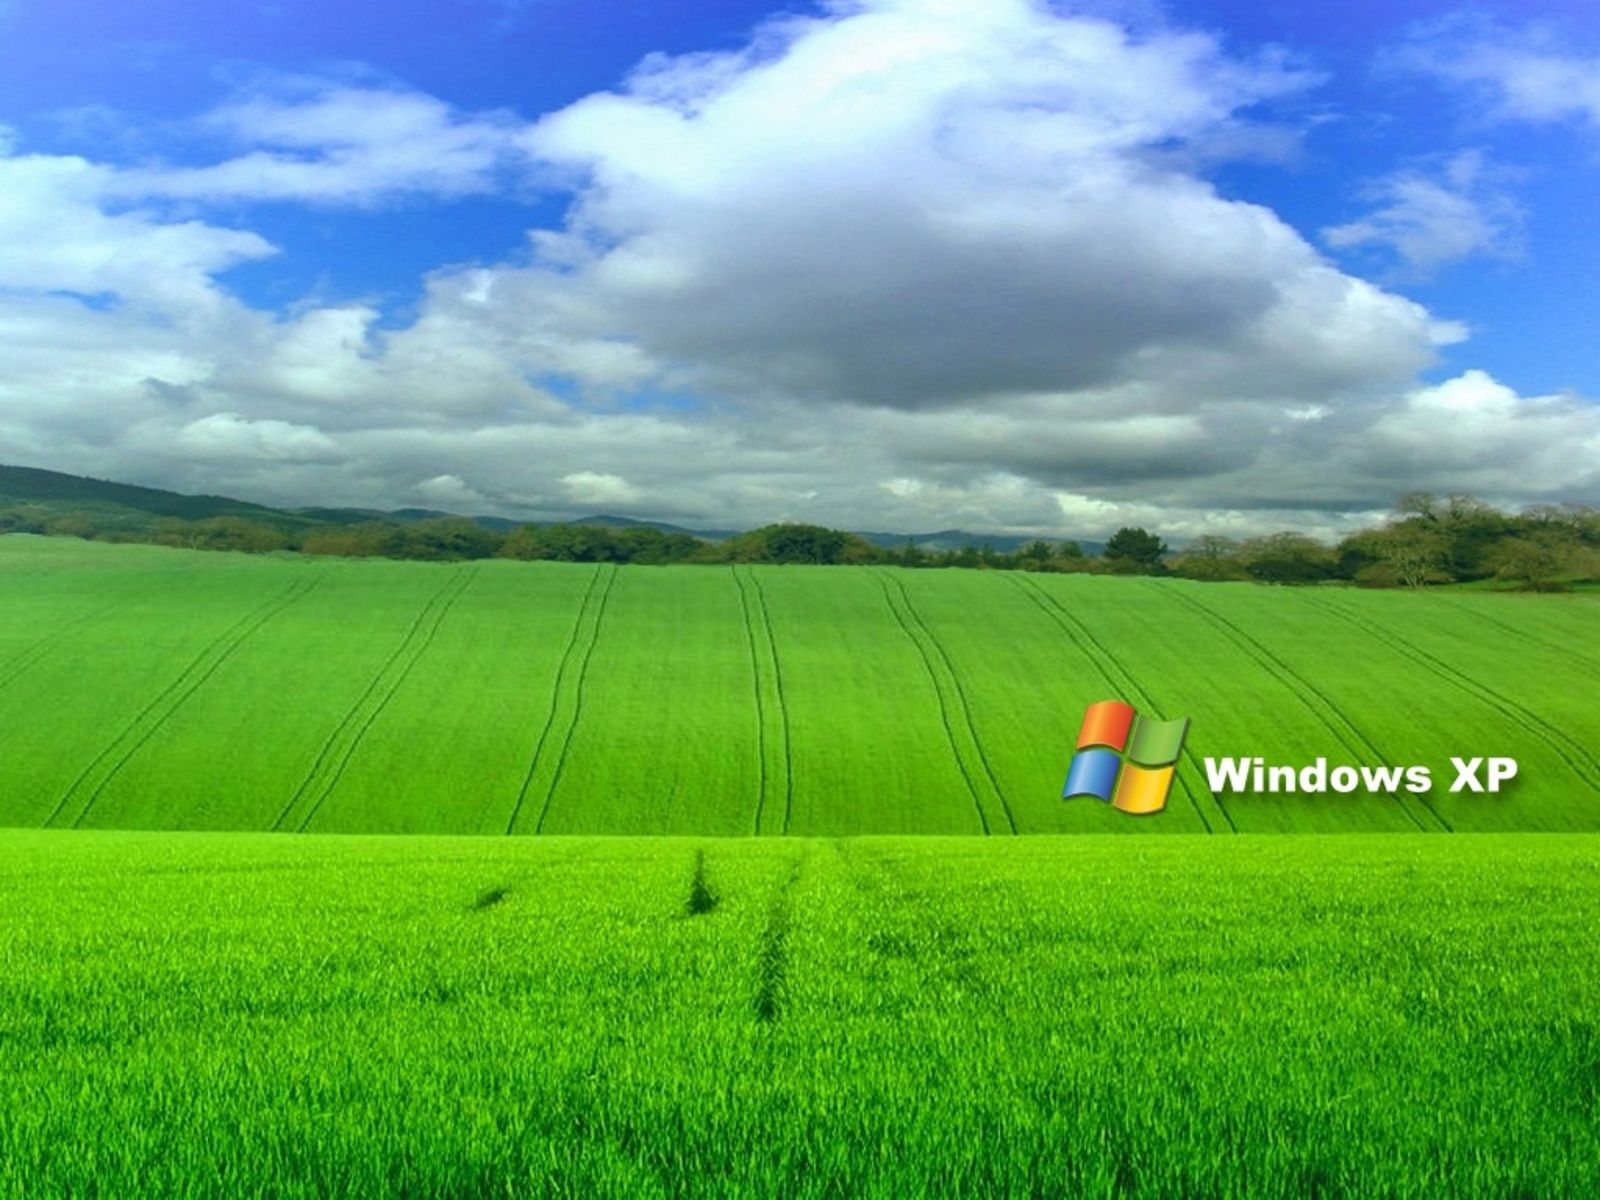 50 fondos de pantalla frescos de Windows XP en HD para descargar gratis